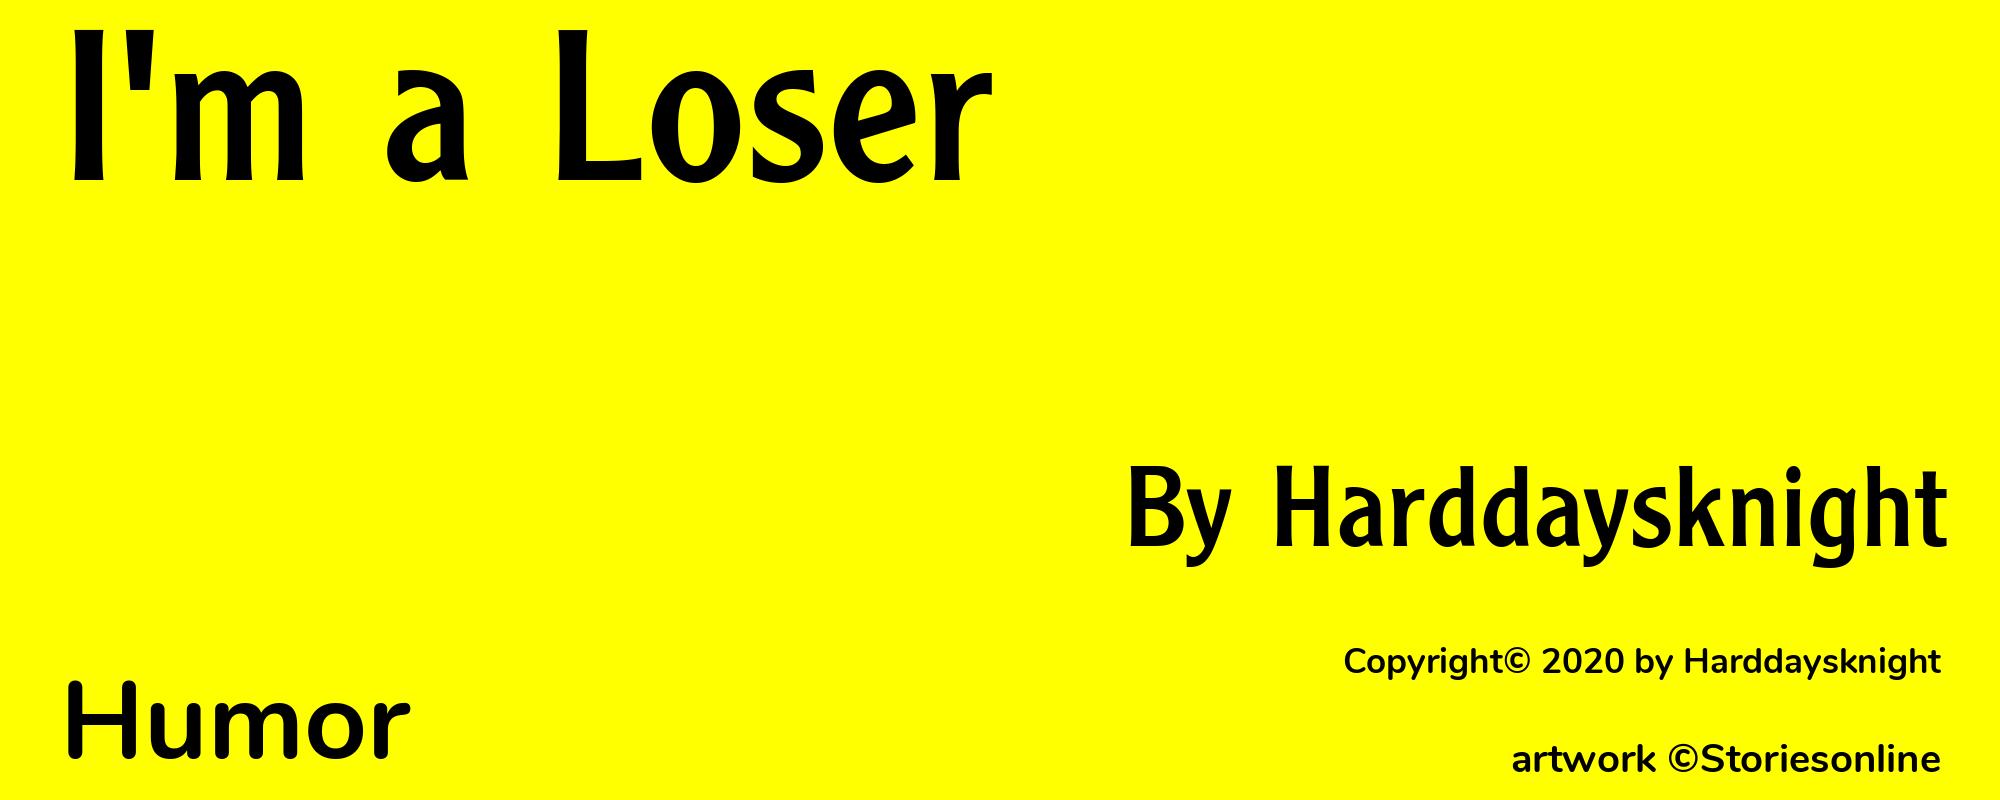 I'm a Loser - Cover